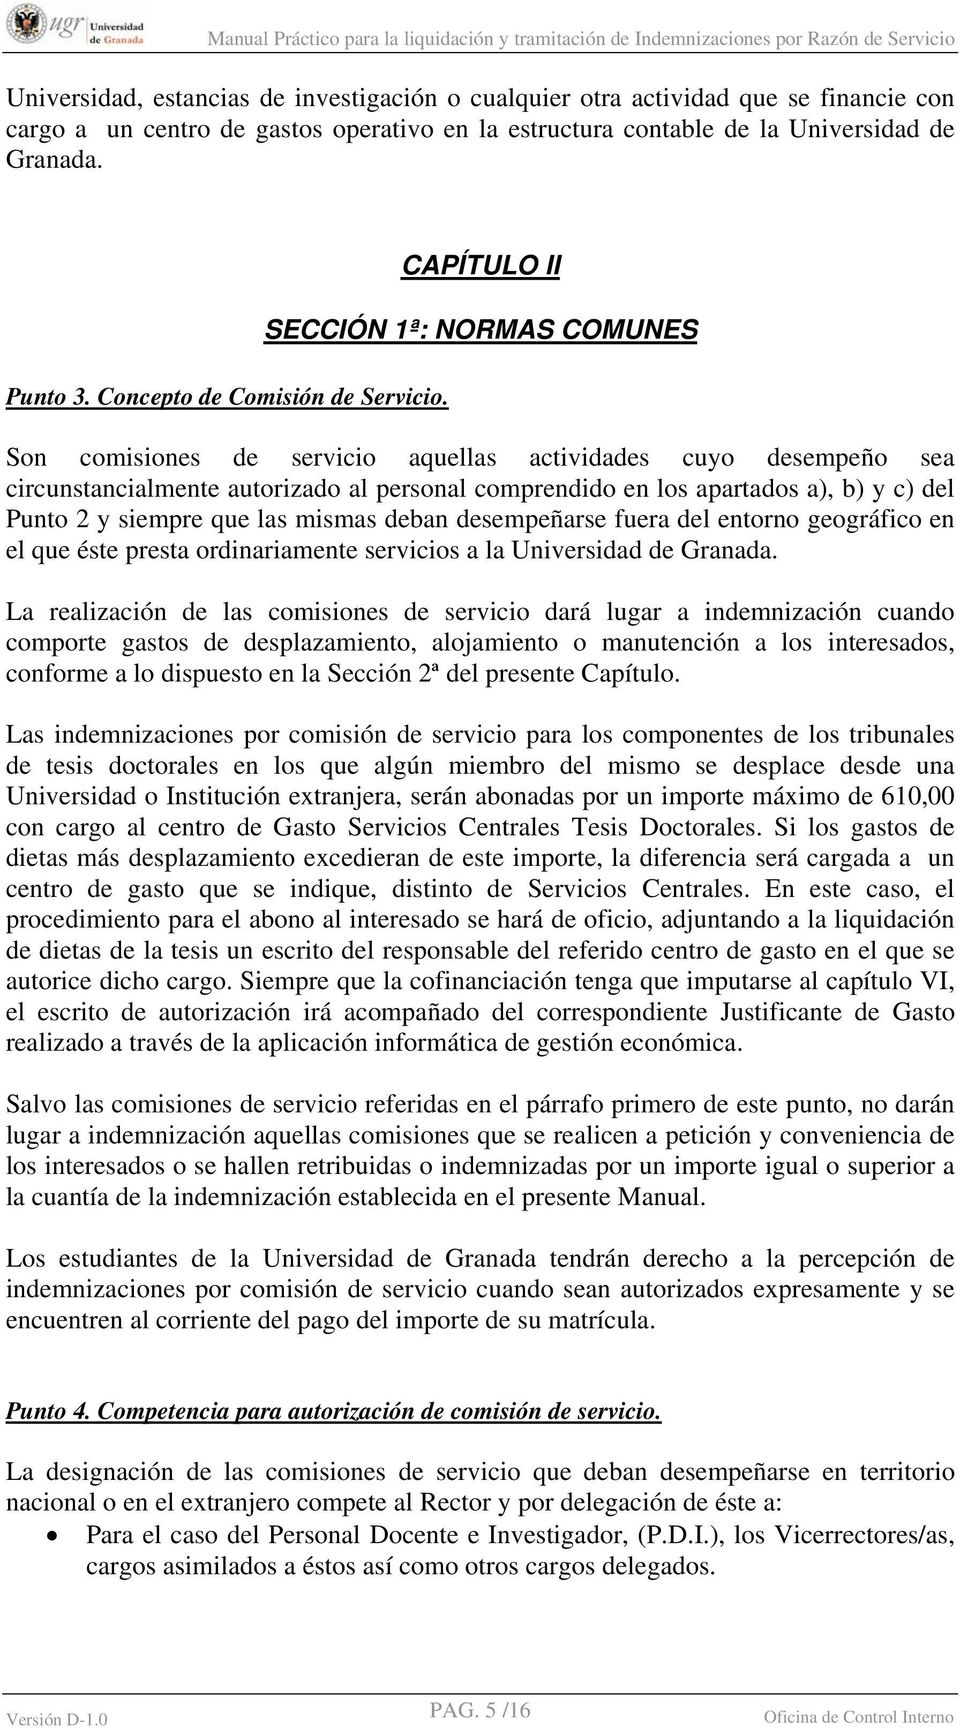 CAPÍTULO II SECCIÓN 1ª: NORMAS COMUNES Son comisiones de servicio aquellas actividades cuyo desempeño sea circunstancialmente autorizado al personal comprendido en los apartados a), b) y c) del Punto